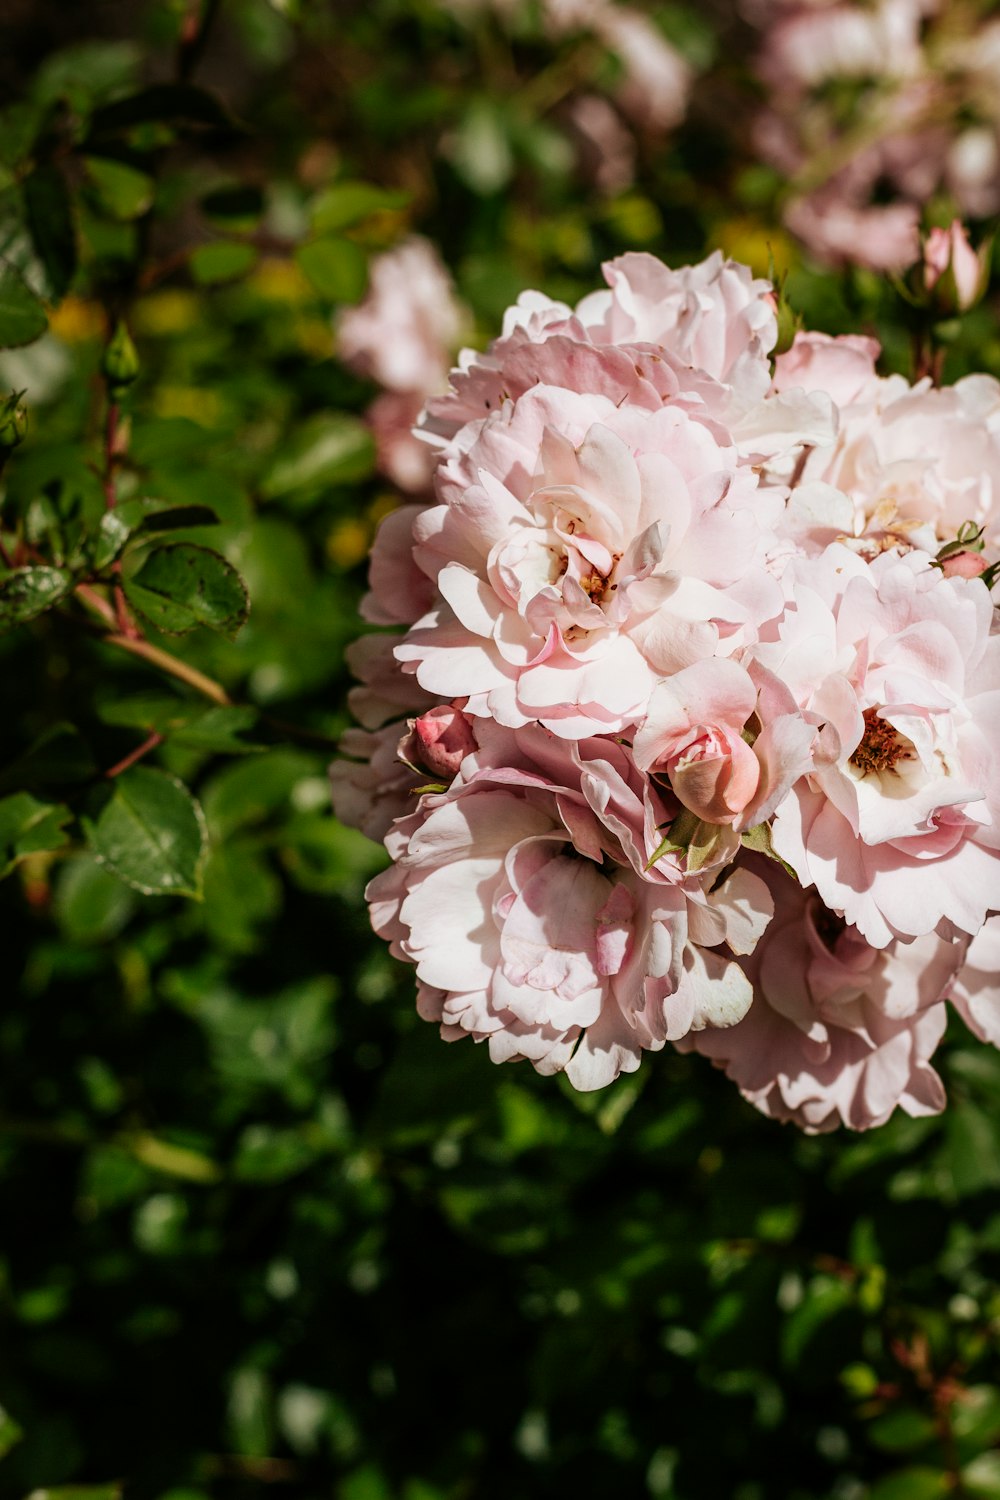 fiore rosa e bianco in lente tilt shift